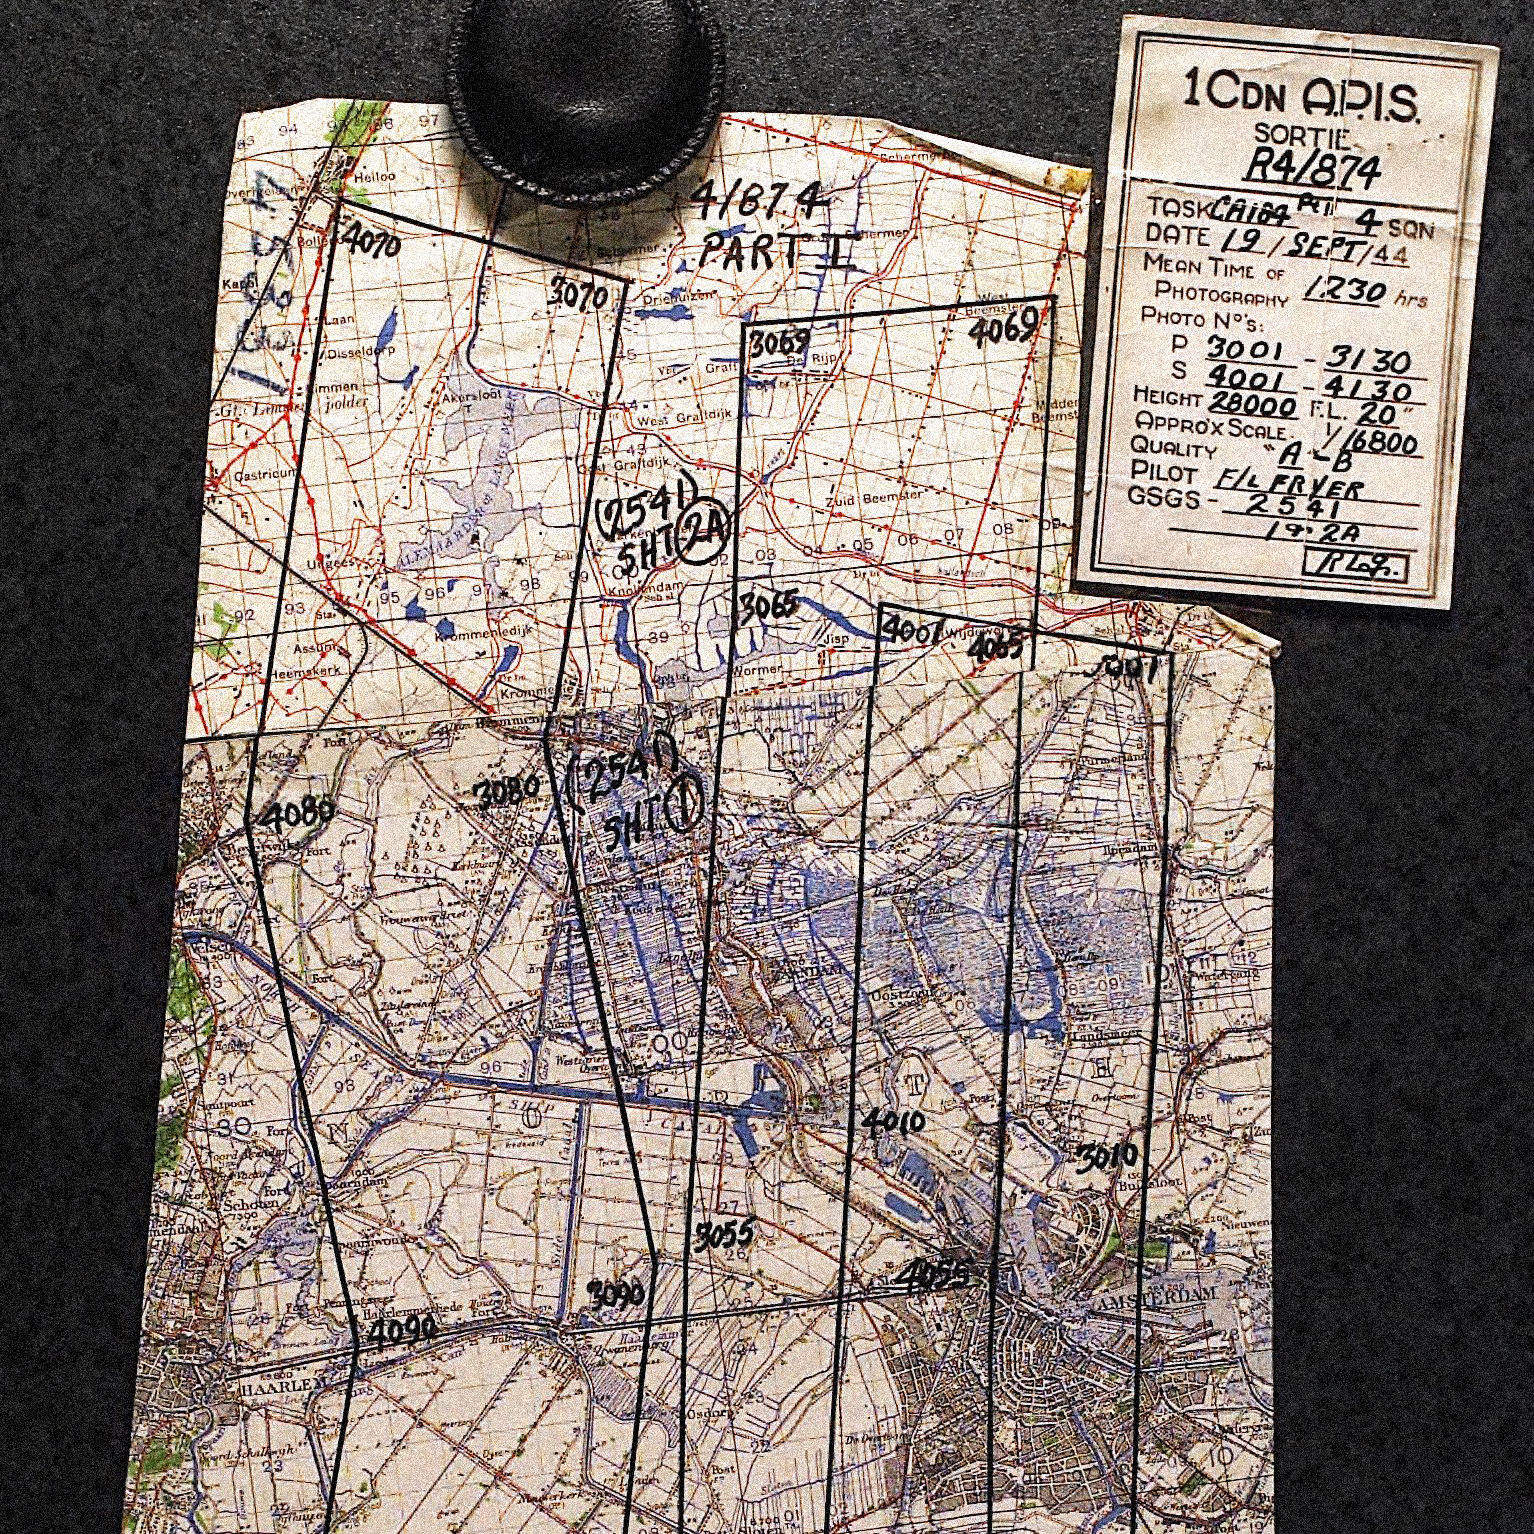 Historische Karte mit eingezeichneten Markierungen auf dunklem Untergrund. Oben rechts liegt ein Schild mit verschiedenen Daten darauf geschrieben.